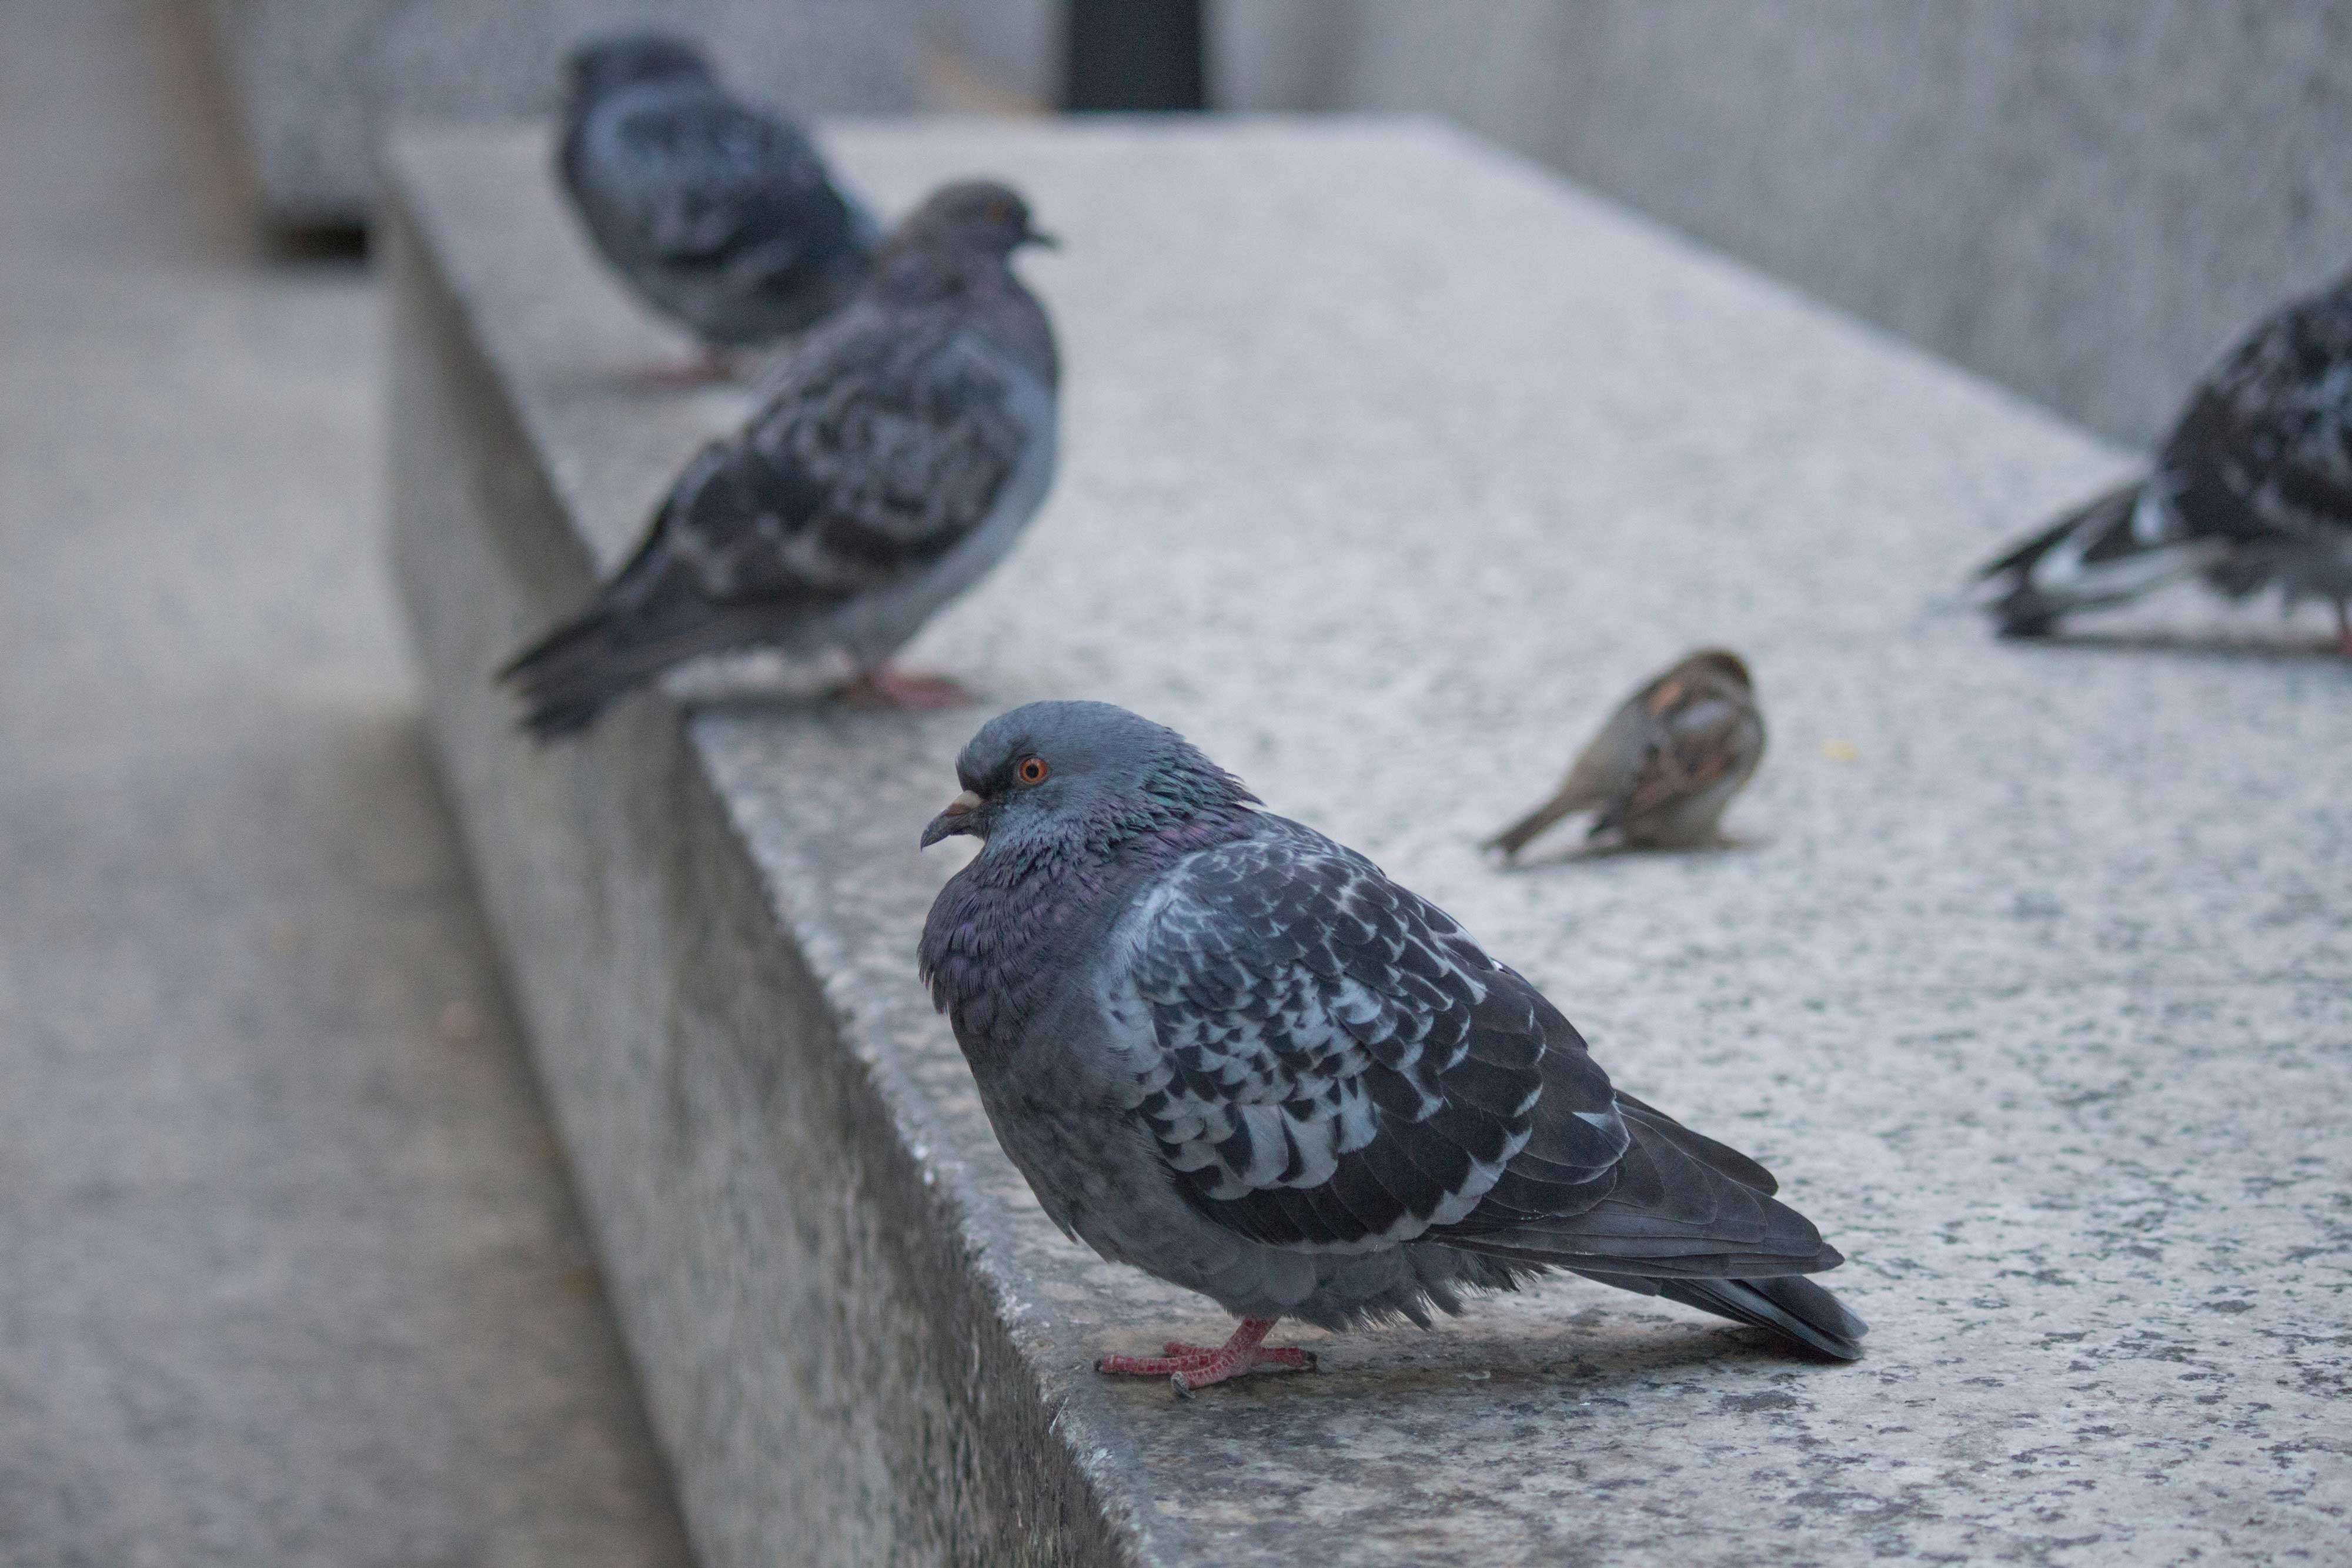 Pigeons on a concrete ledge